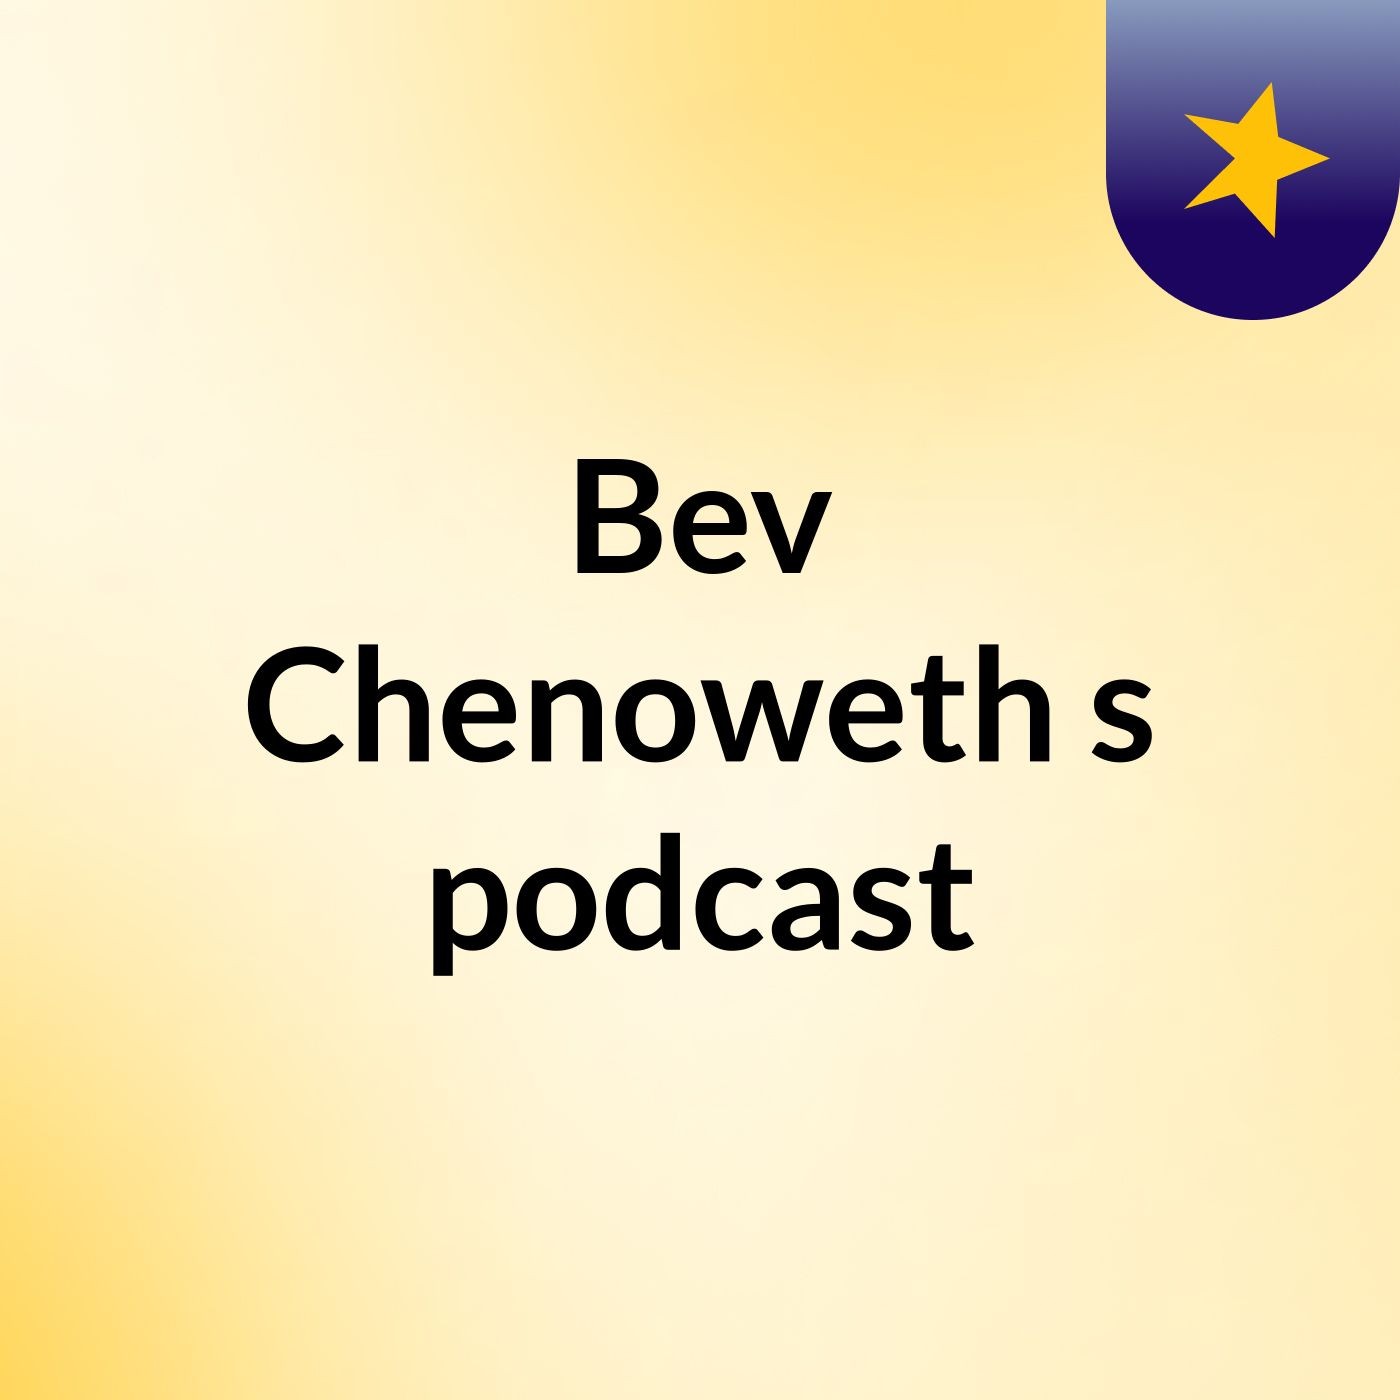 Episode 5 - Bev Chenoweth's podcast